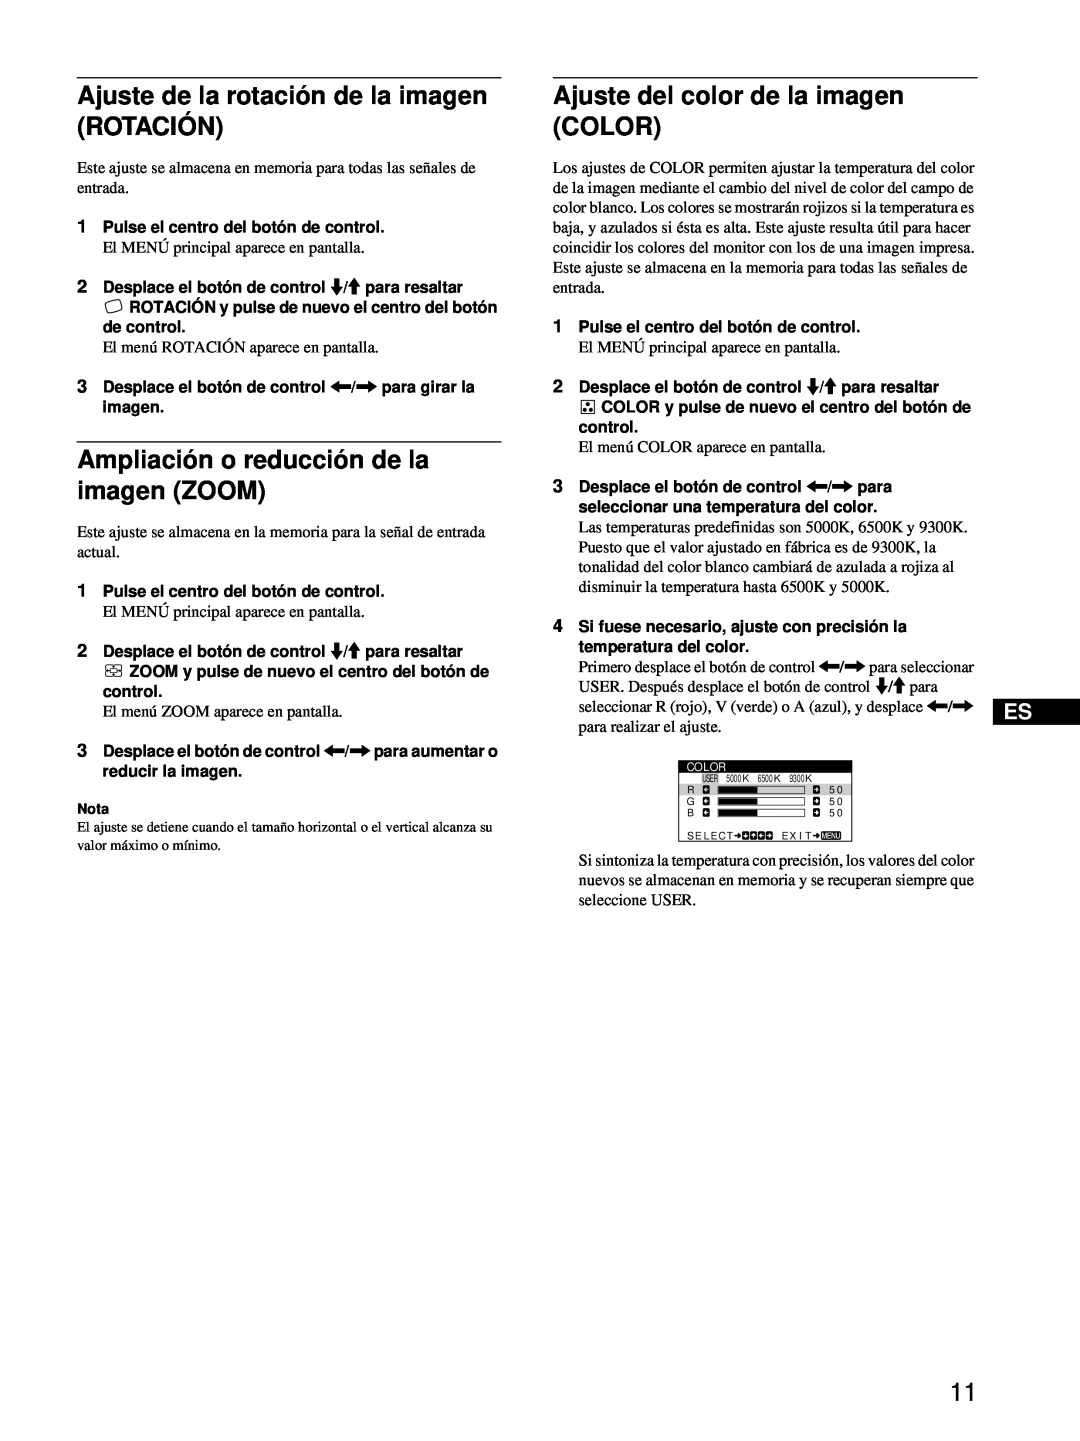 Sony CPD-E100 manual Ajuste de la rotación de la imagen ROTACIÓN, Ampliación o reducción de la imagen ZOOM 